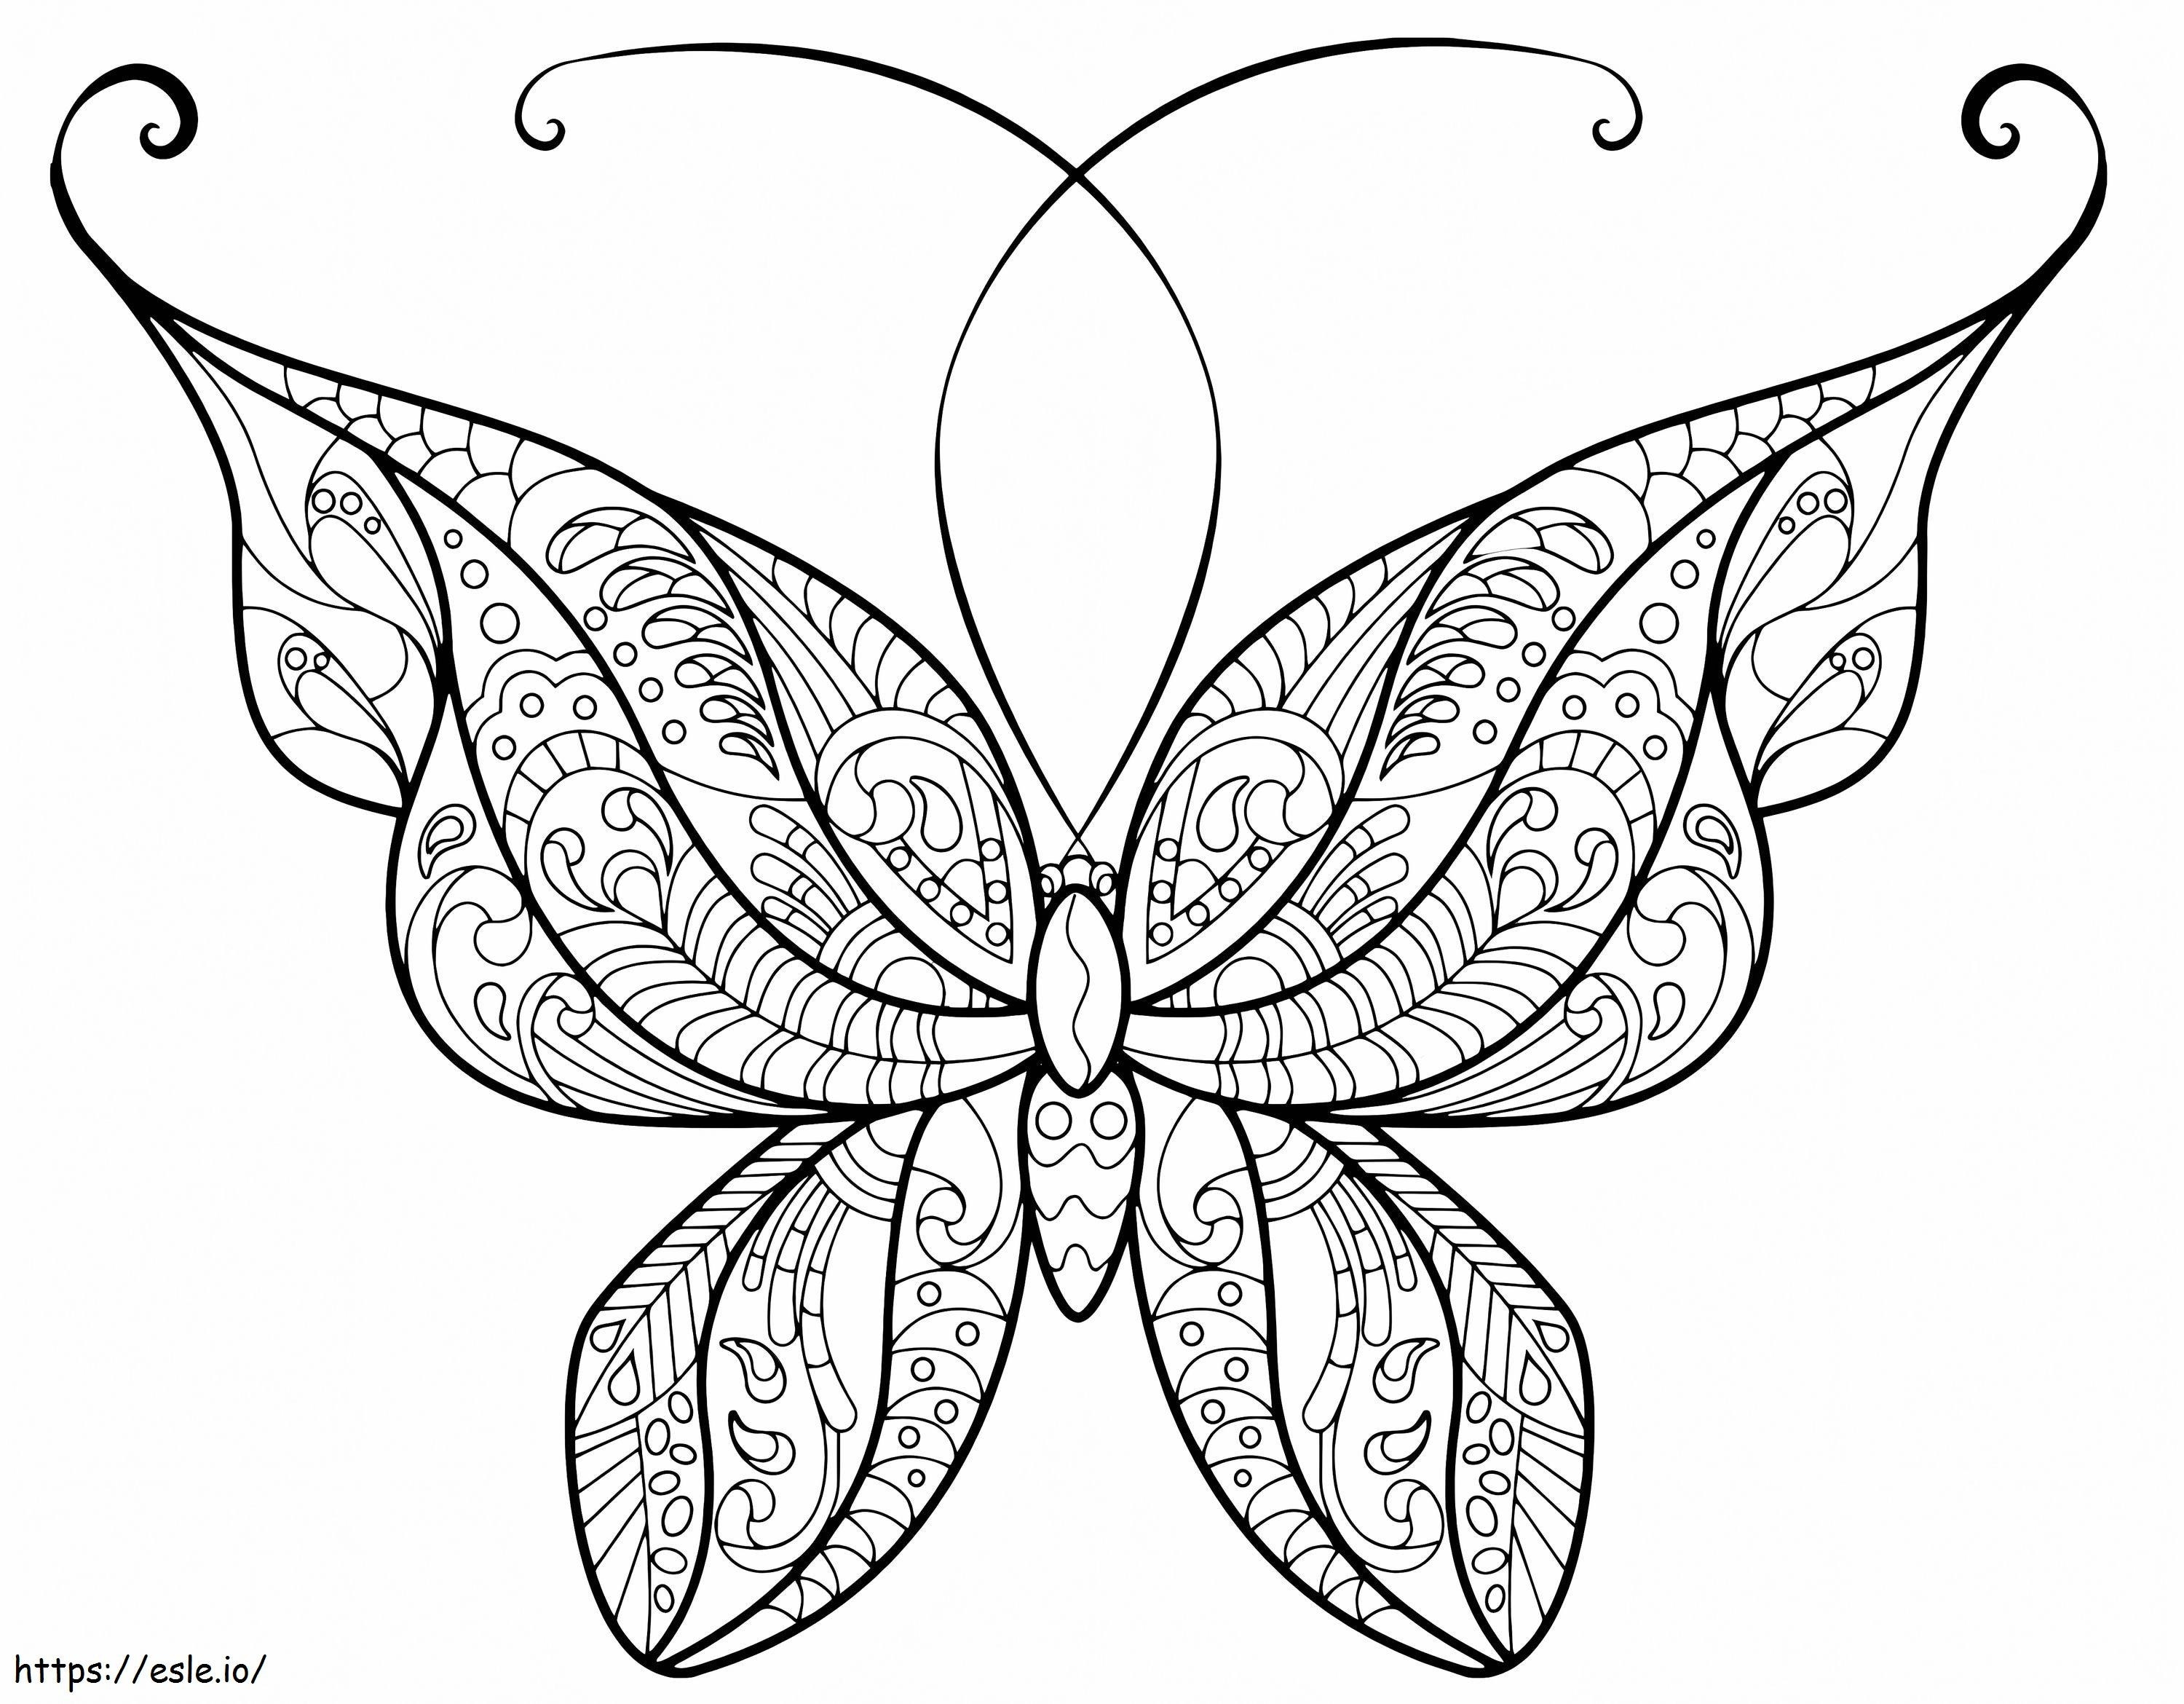 Felnőtt pillangó szép minták 4 kifestő